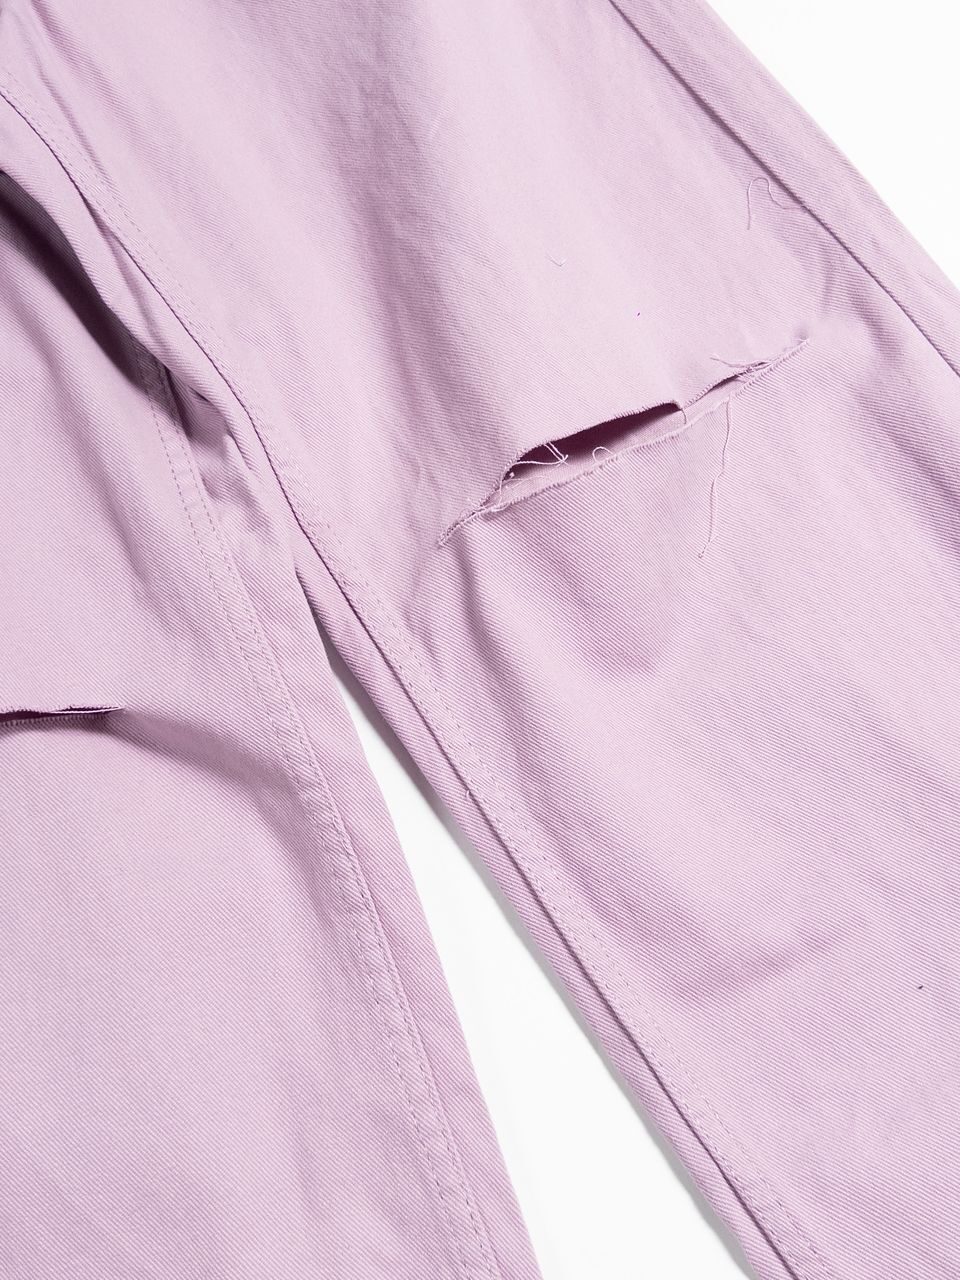 Мешковатые джинсы с высокой талией цвет светло-фиолетовый размер EUR 42 (rus 48) H&M